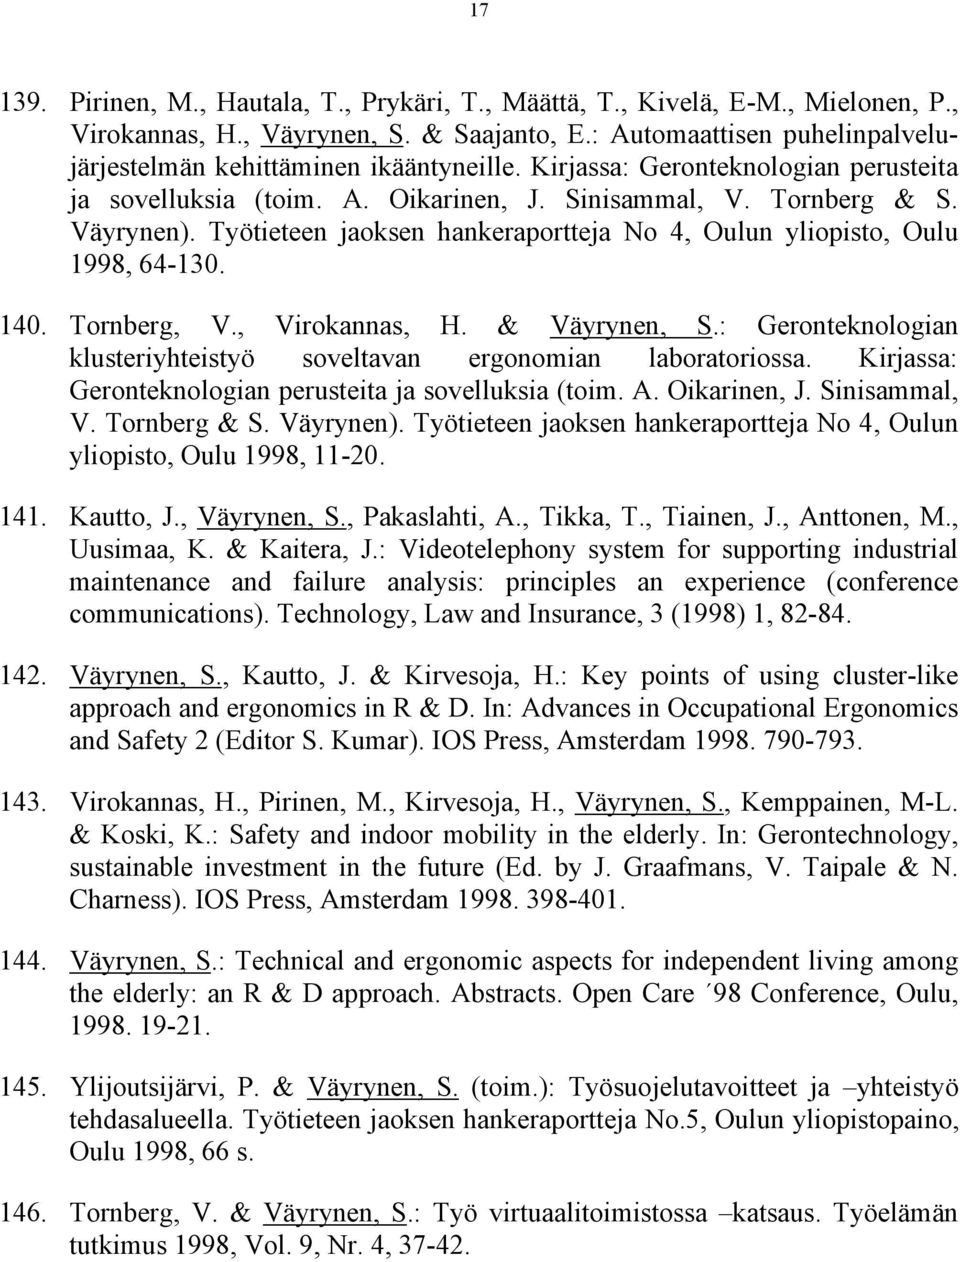 Tornberg, V., Virokannas, H. & Väyrynen, S.: Geronteknologian klusteriyhteistyö soveltavan ergonomian laboratoriossa. Kirjassa: Geronteknologian perusteita ja sovelluksia (toim. A. Oikarinen, J.